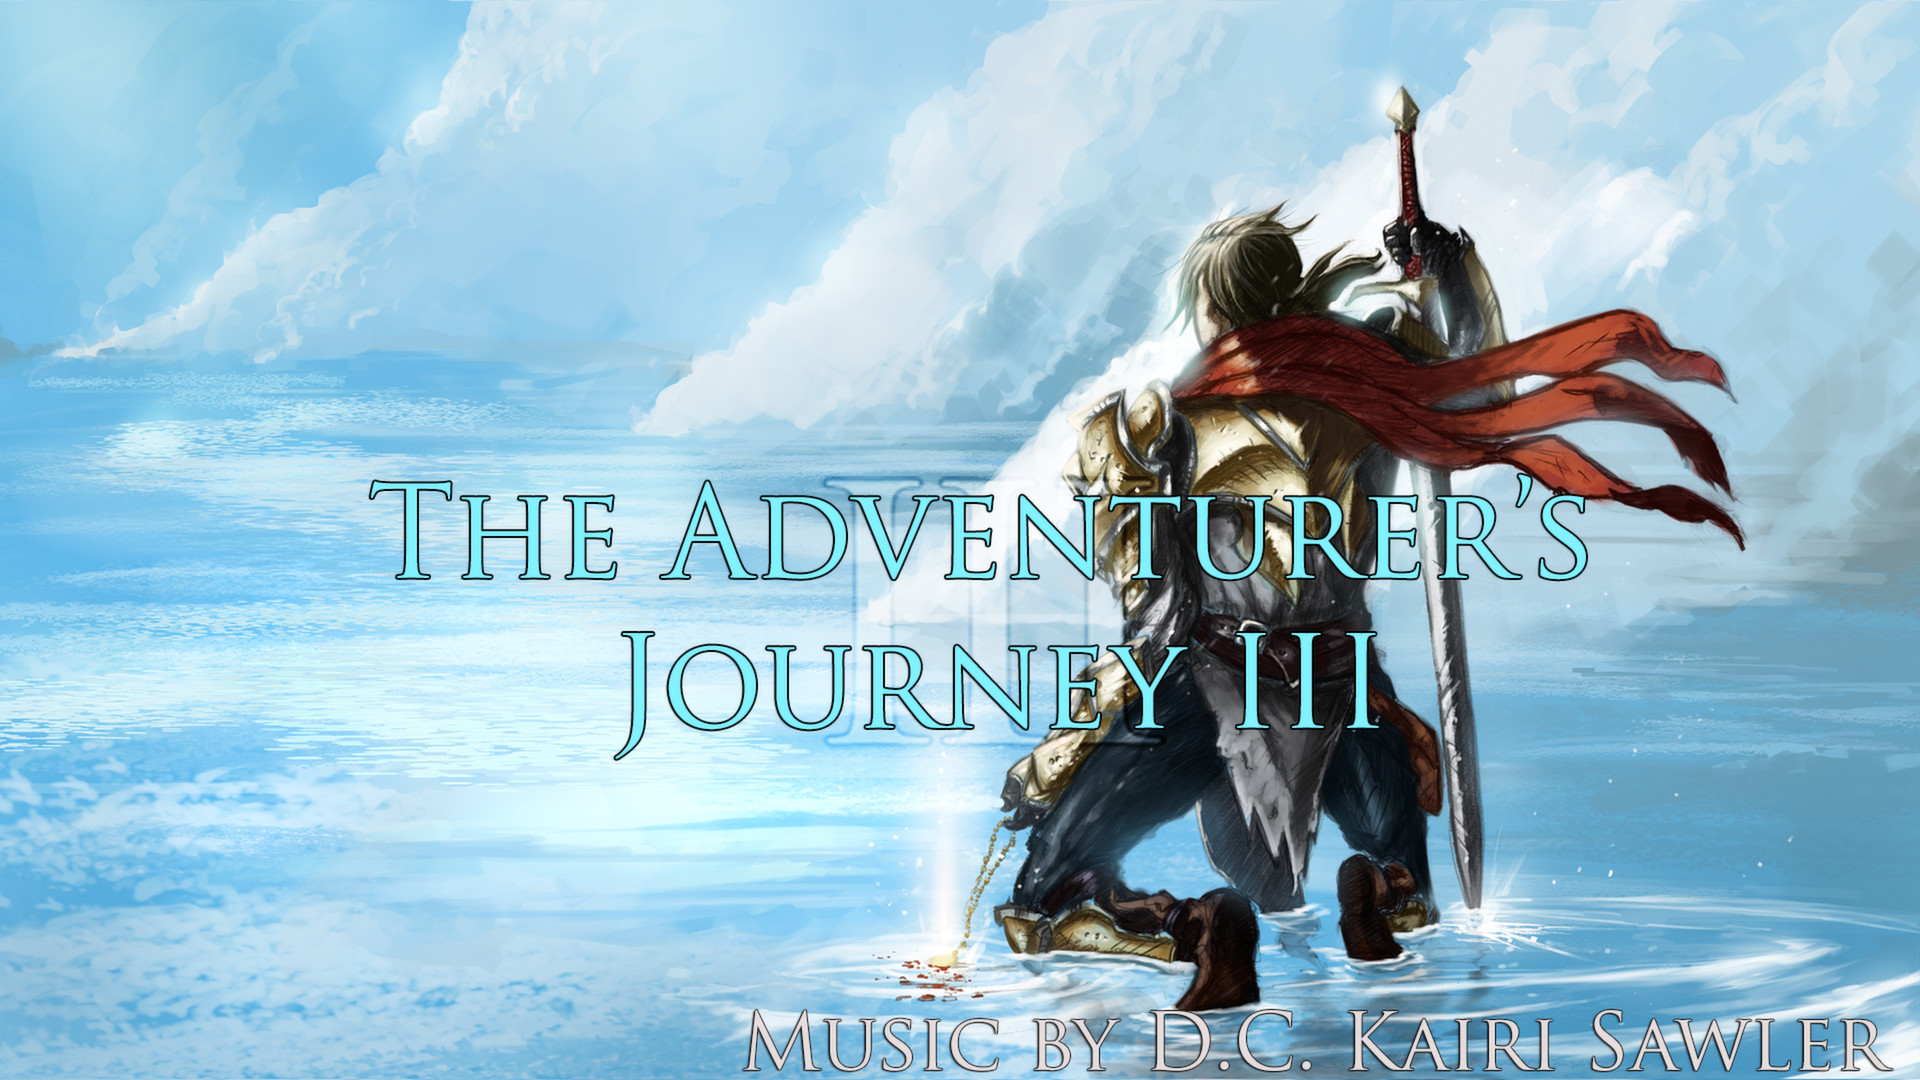 RPG Maker VX Ace - The Adventurer's Journey III DLC Steam CD Key USD 4.51